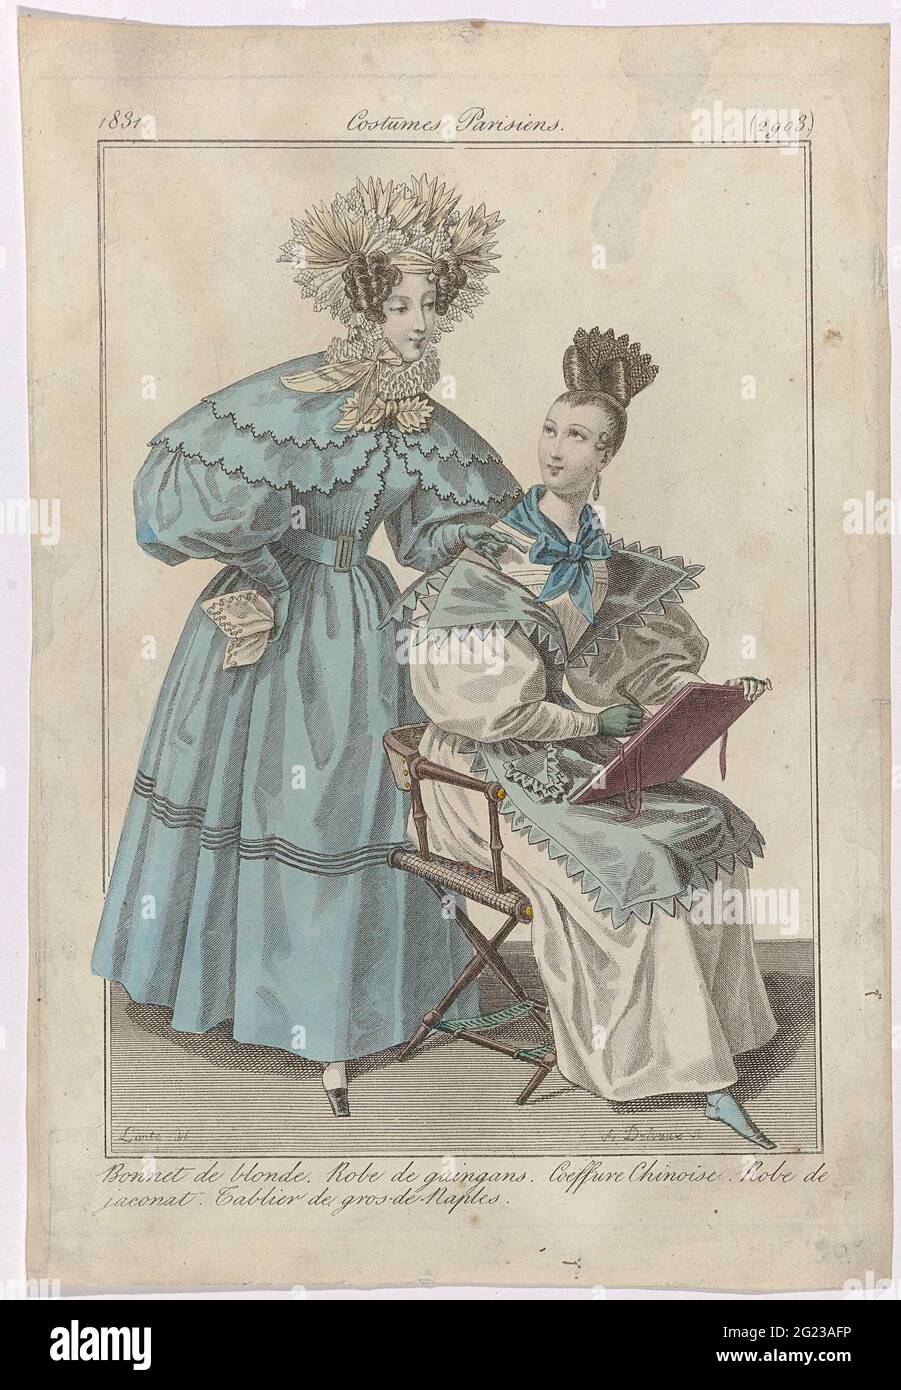 Journal des Ladies et des Modes, Costumes Parisiens, 15 Juillet 1831,  (2903): Bonnet de Blond (...). Mujer con una gorra de rubia en la cabeza  (borde de polla). Ella está usando una